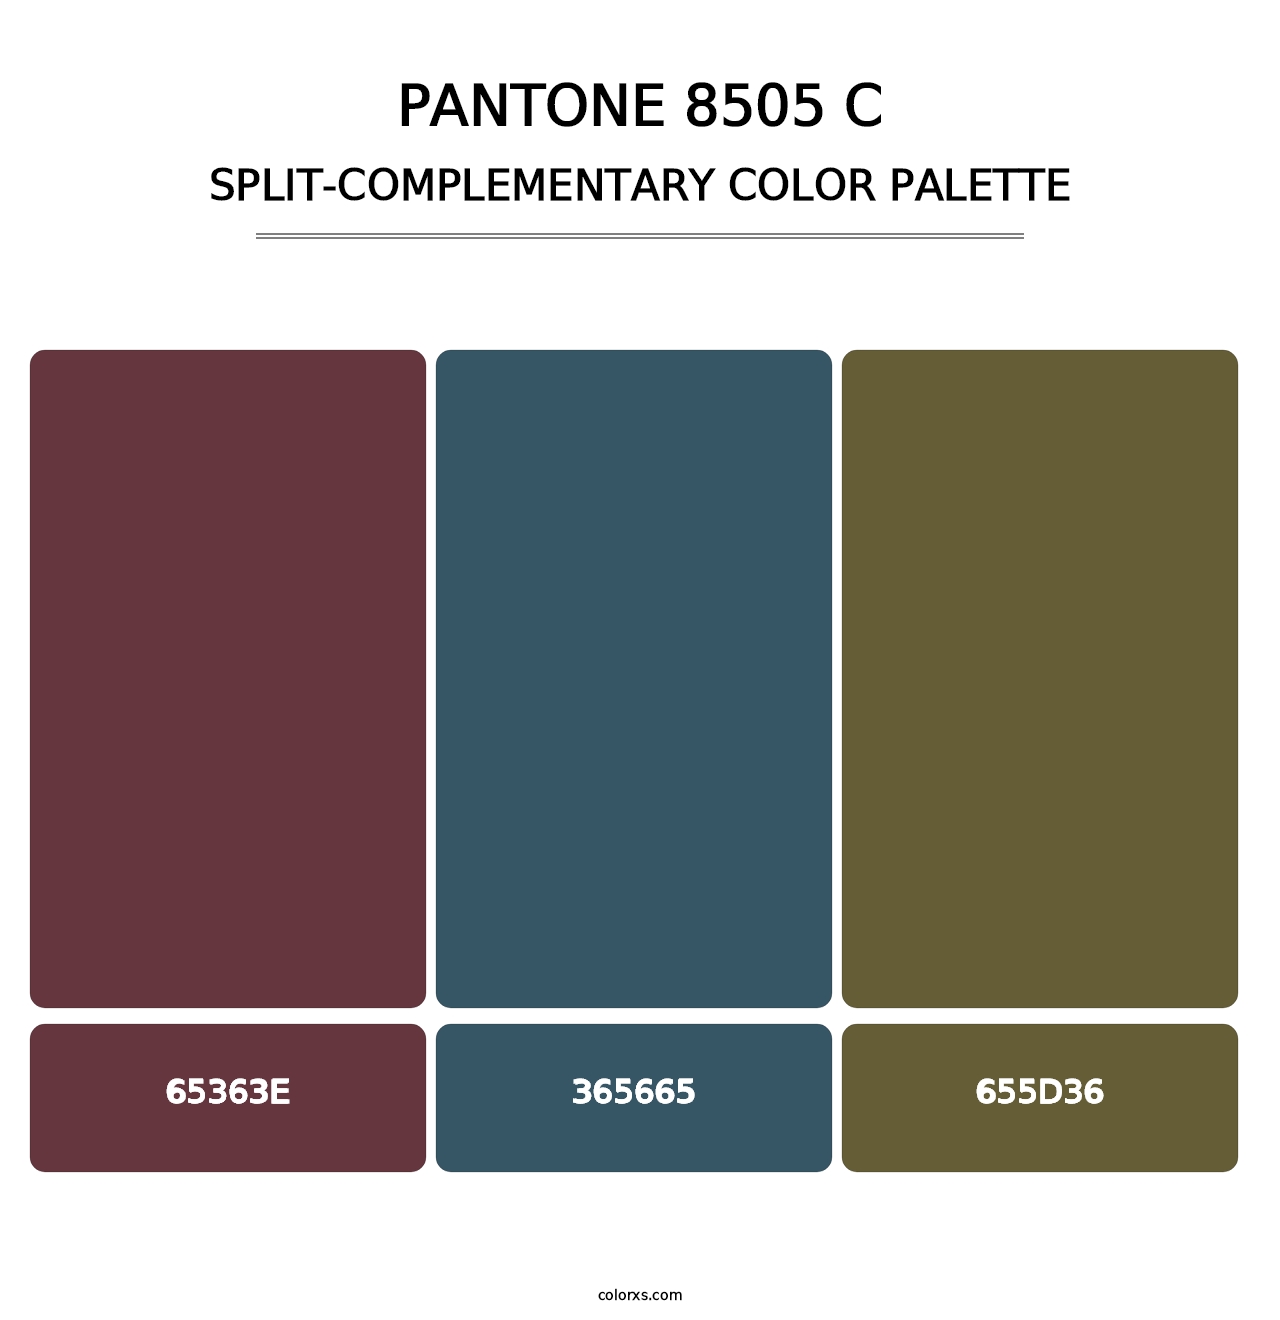 PANTONE 8505 C - Split-Complementary Color Palette